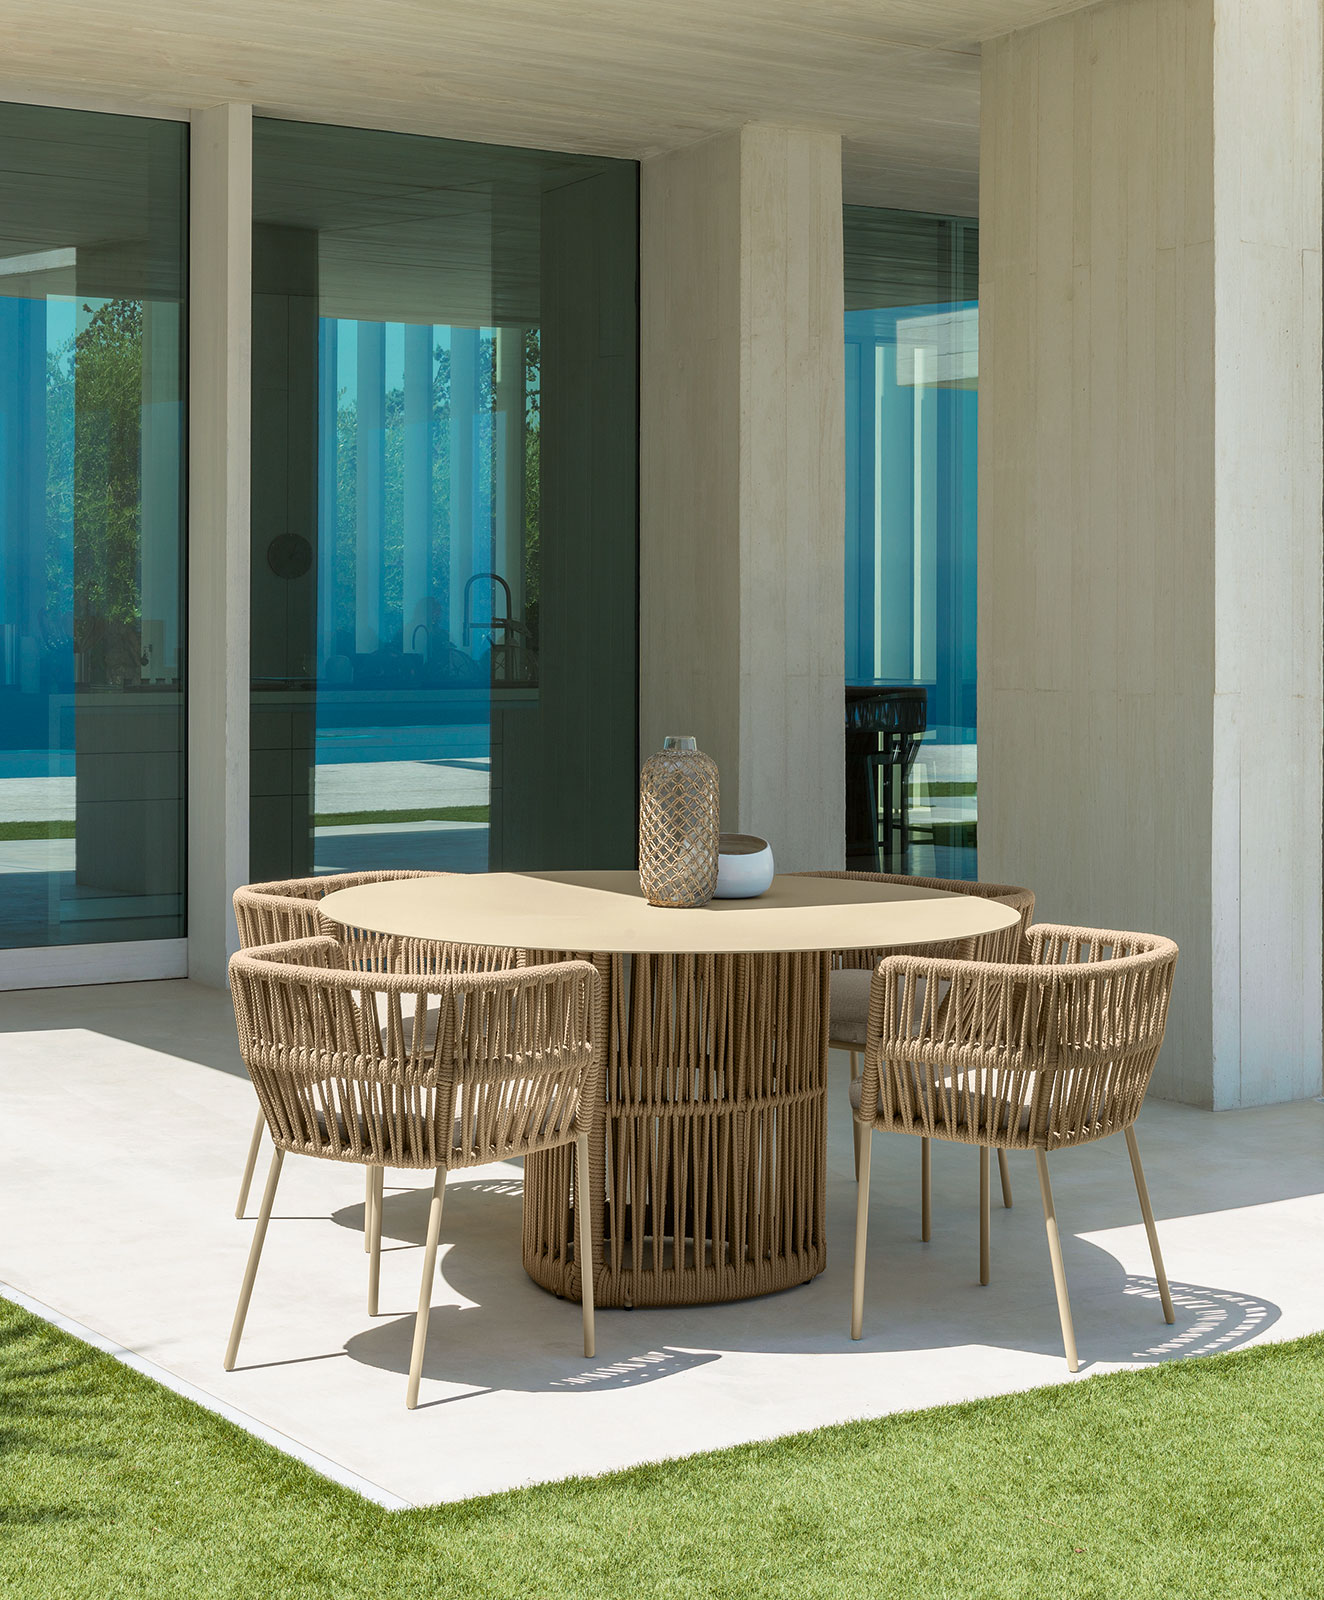 Fauteuil de jardin en aluminium et corde. Vente en ligne de meubles d'extérieur design haut de gamme pour balcons et terrasses avec livraison gratuite.